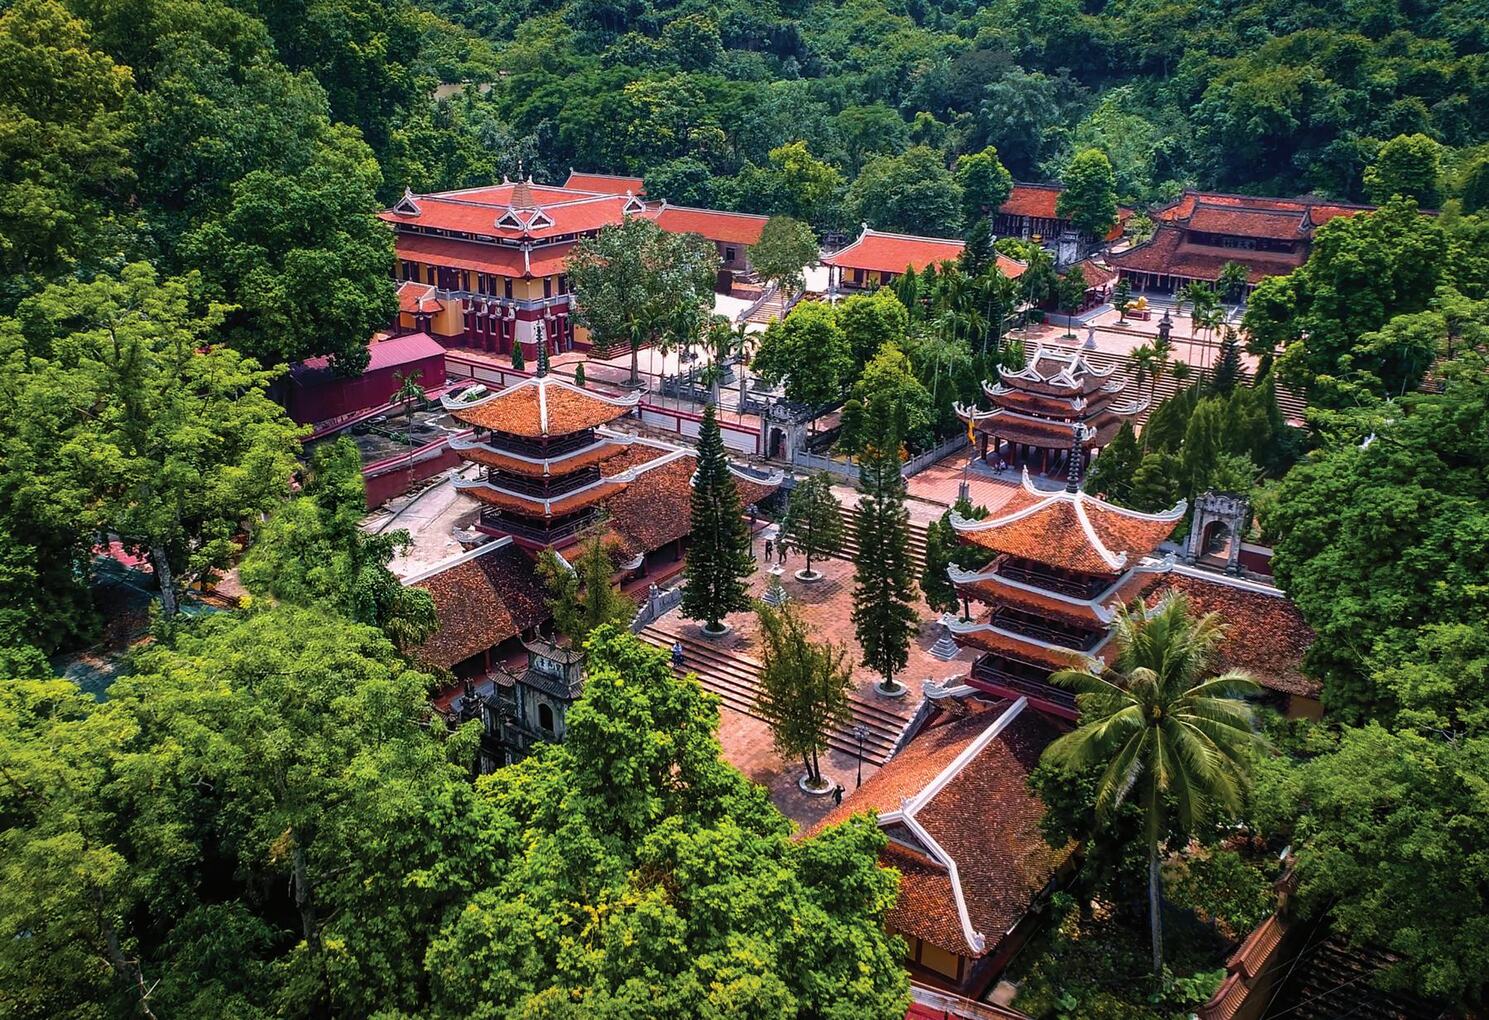 Khám phá chùa Hương - Một trong những ngôi chùa có lịch sử lâu đời nhất tại Hà Nội 3